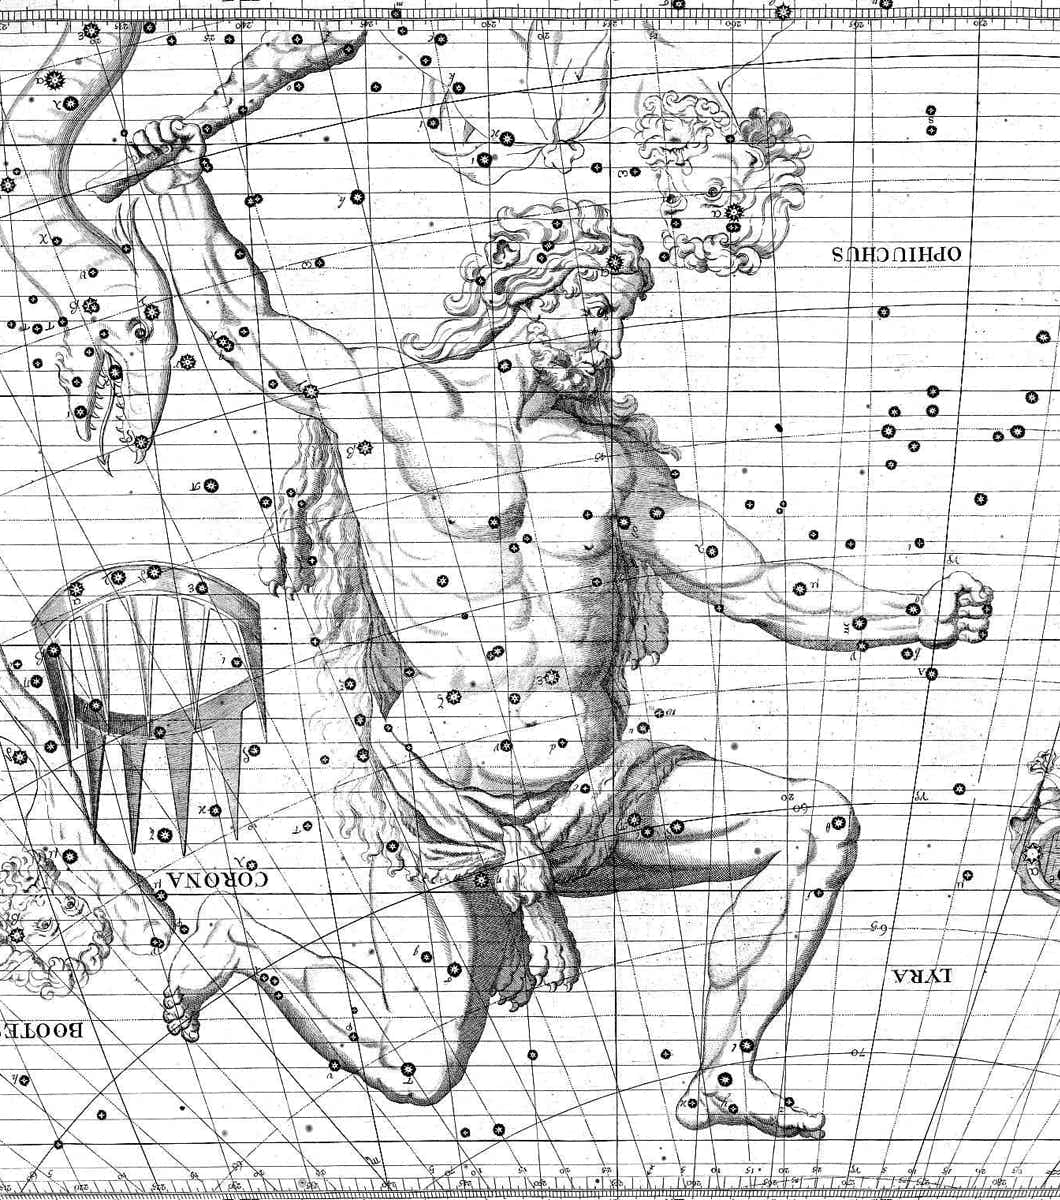 Hercules on Flamsteed's Atlas Coelestis